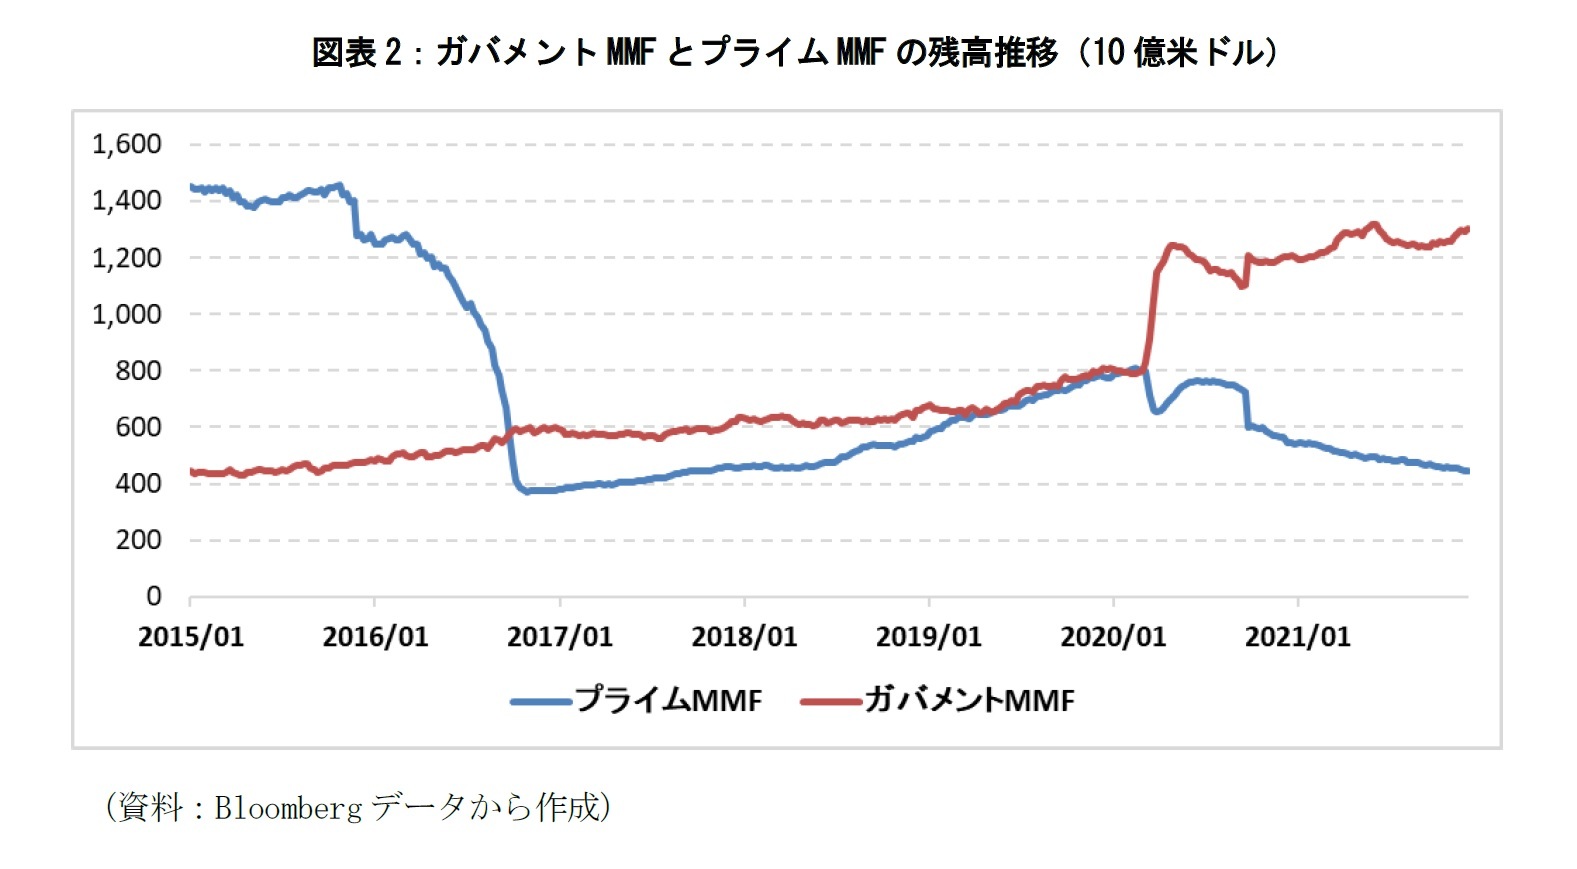 図表2：ガバメントMMFとプライムMMFの残高推移（10億米ドル）